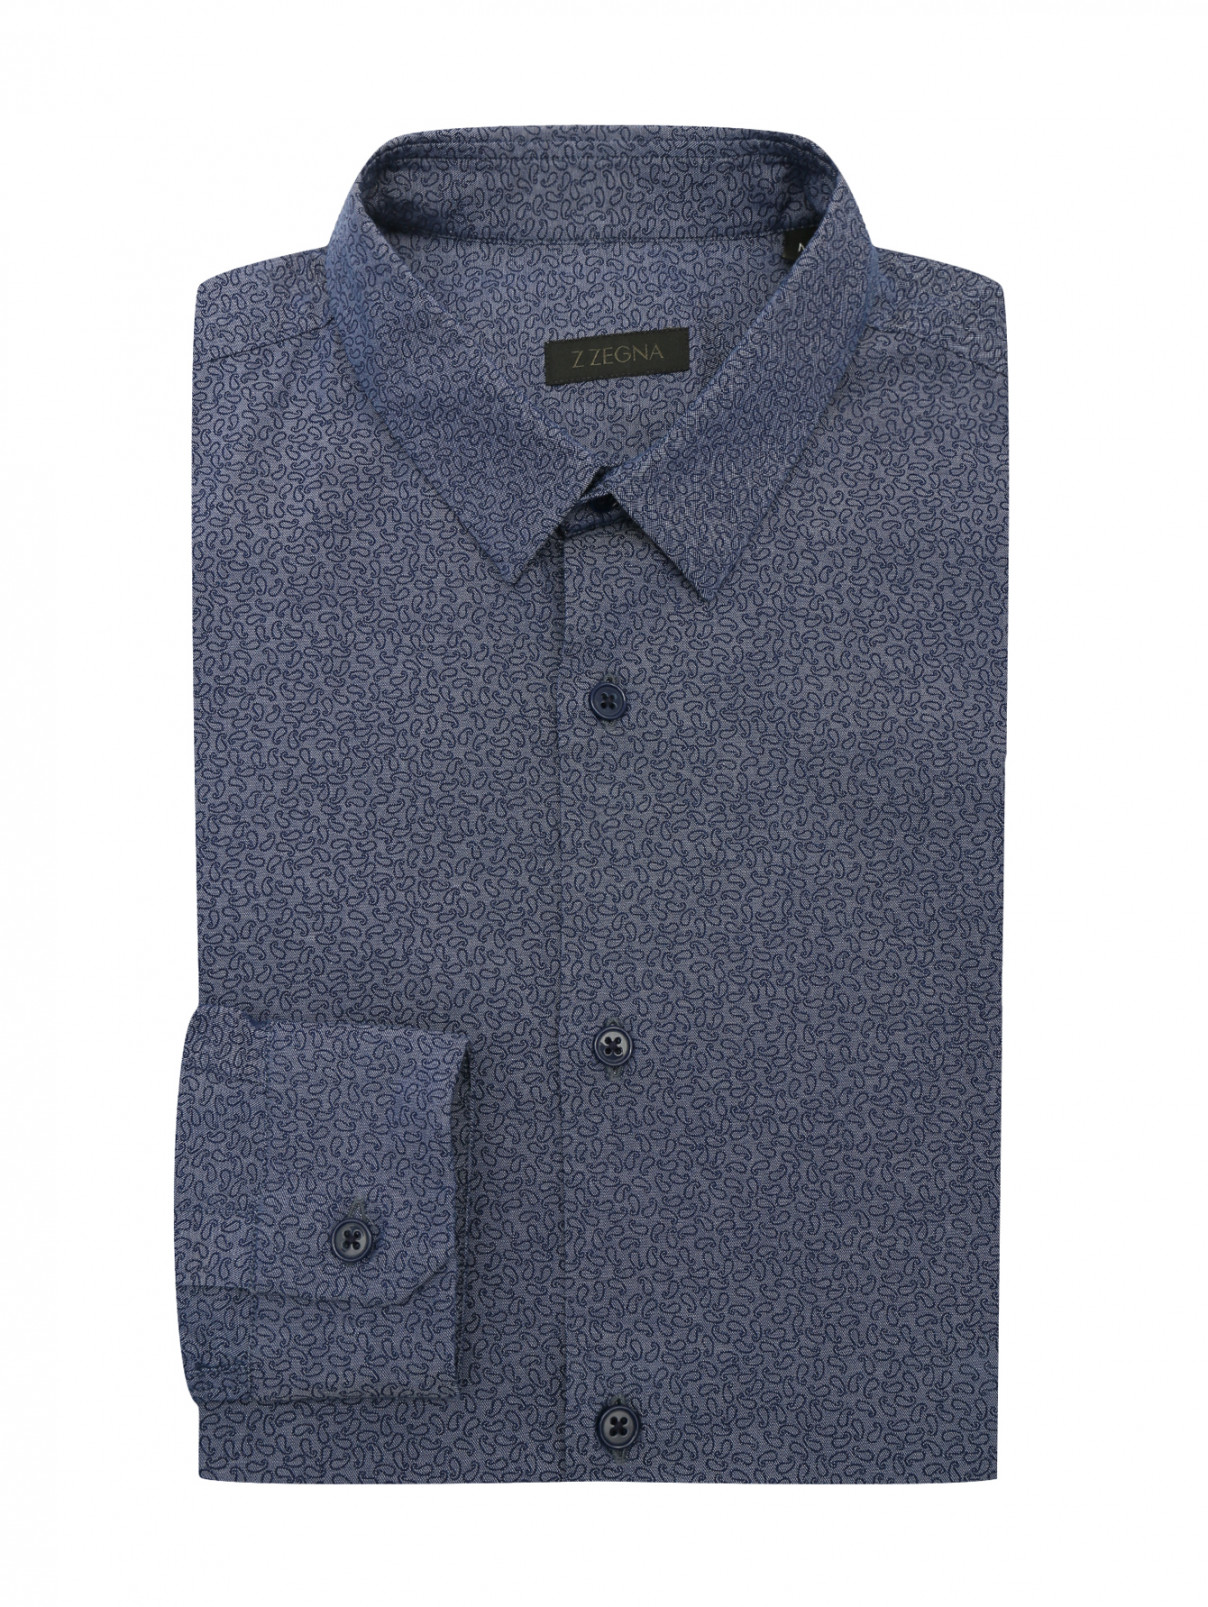 Рубашка из хлопка с узором Ermenegildo Zegna  –  Общий вид  – Цвет:  Синий